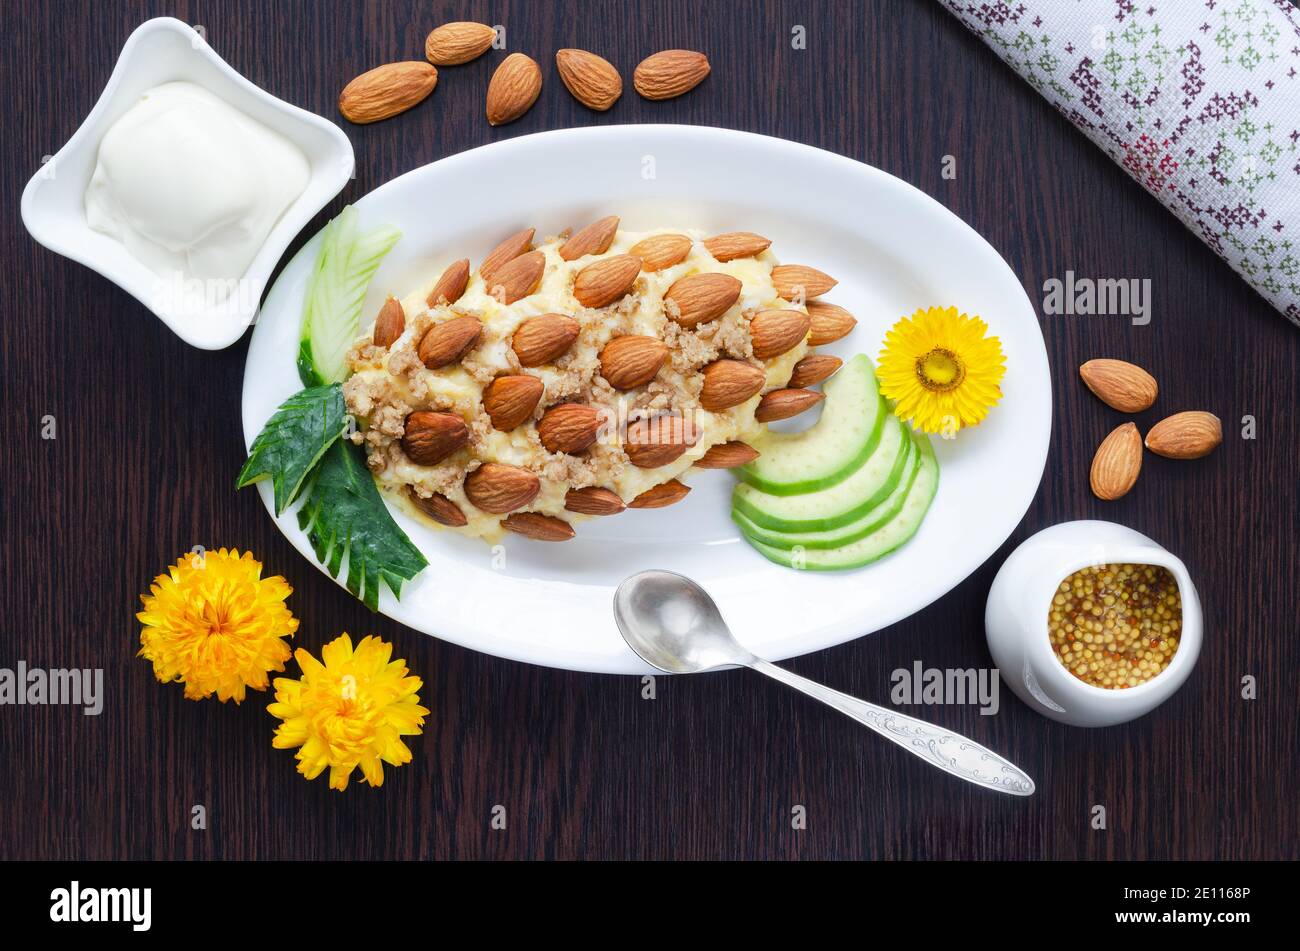 Belle, décorative et saine nourriture, salade décorée avec des amandes sur la table. Mise au point sélective, vue de dessus Banque D'Images